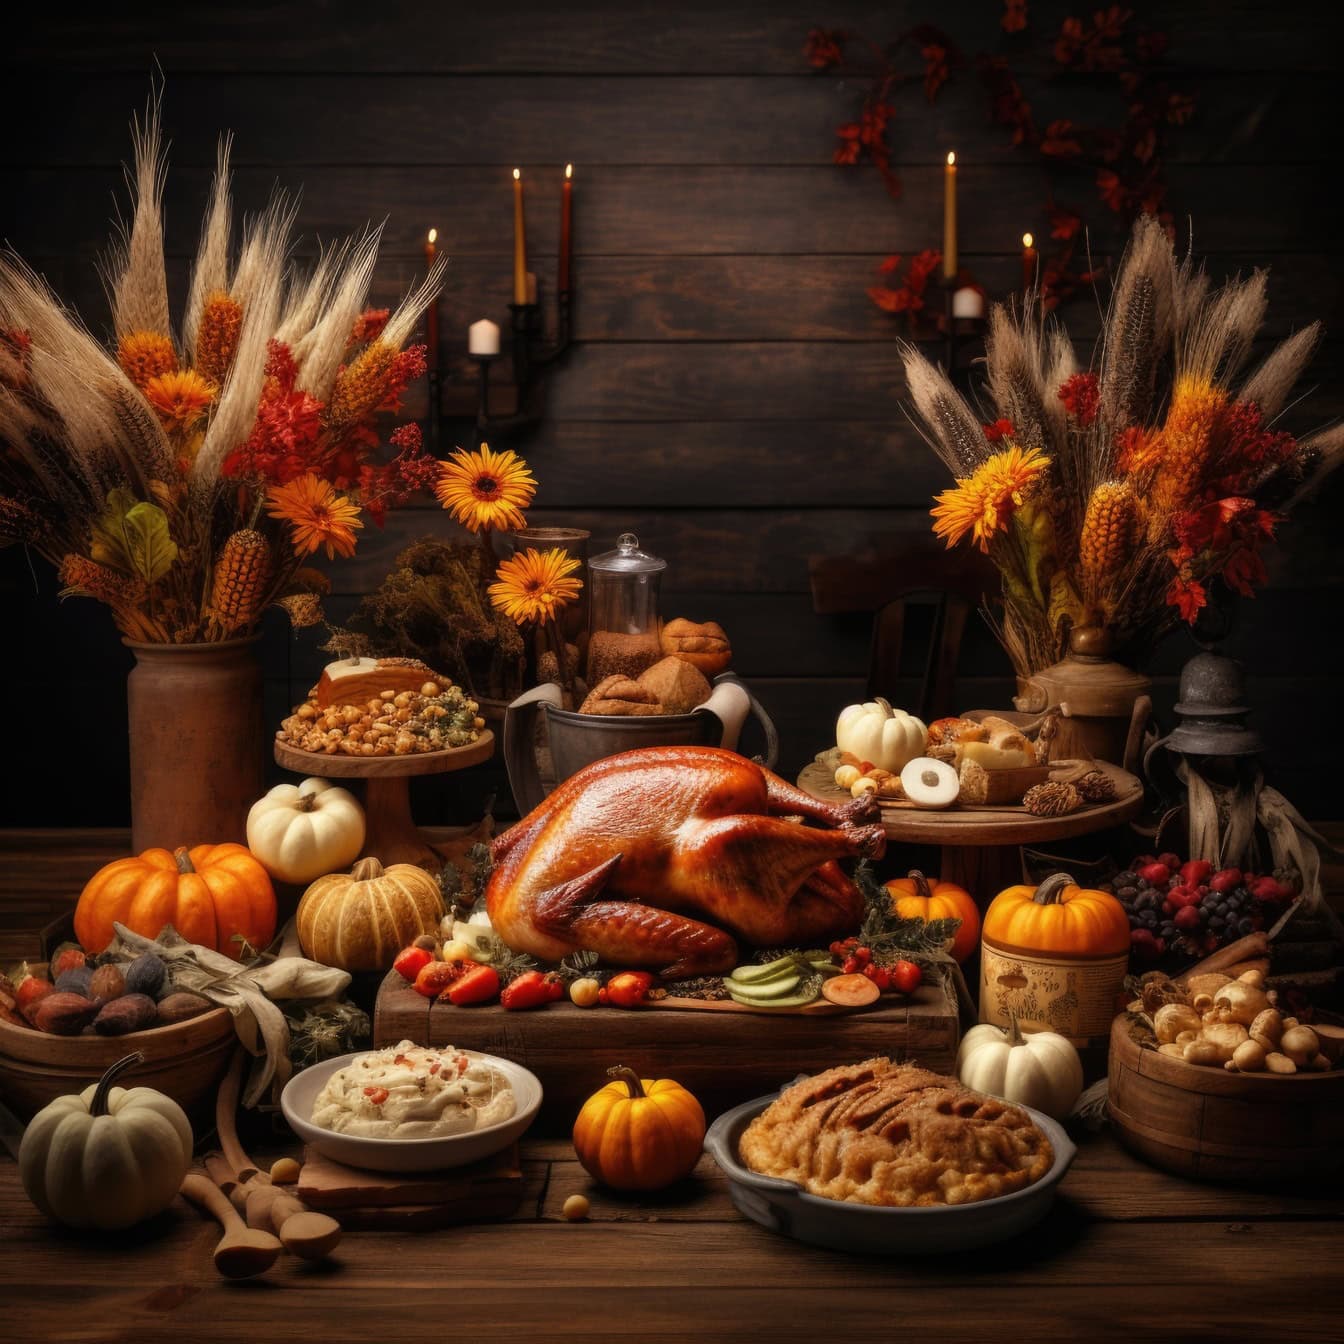 Pečena puretina na stolu s drugom hranom i cvijećem za Dan zahvalnosti, ilustracija večere za Dan zahvalnosti